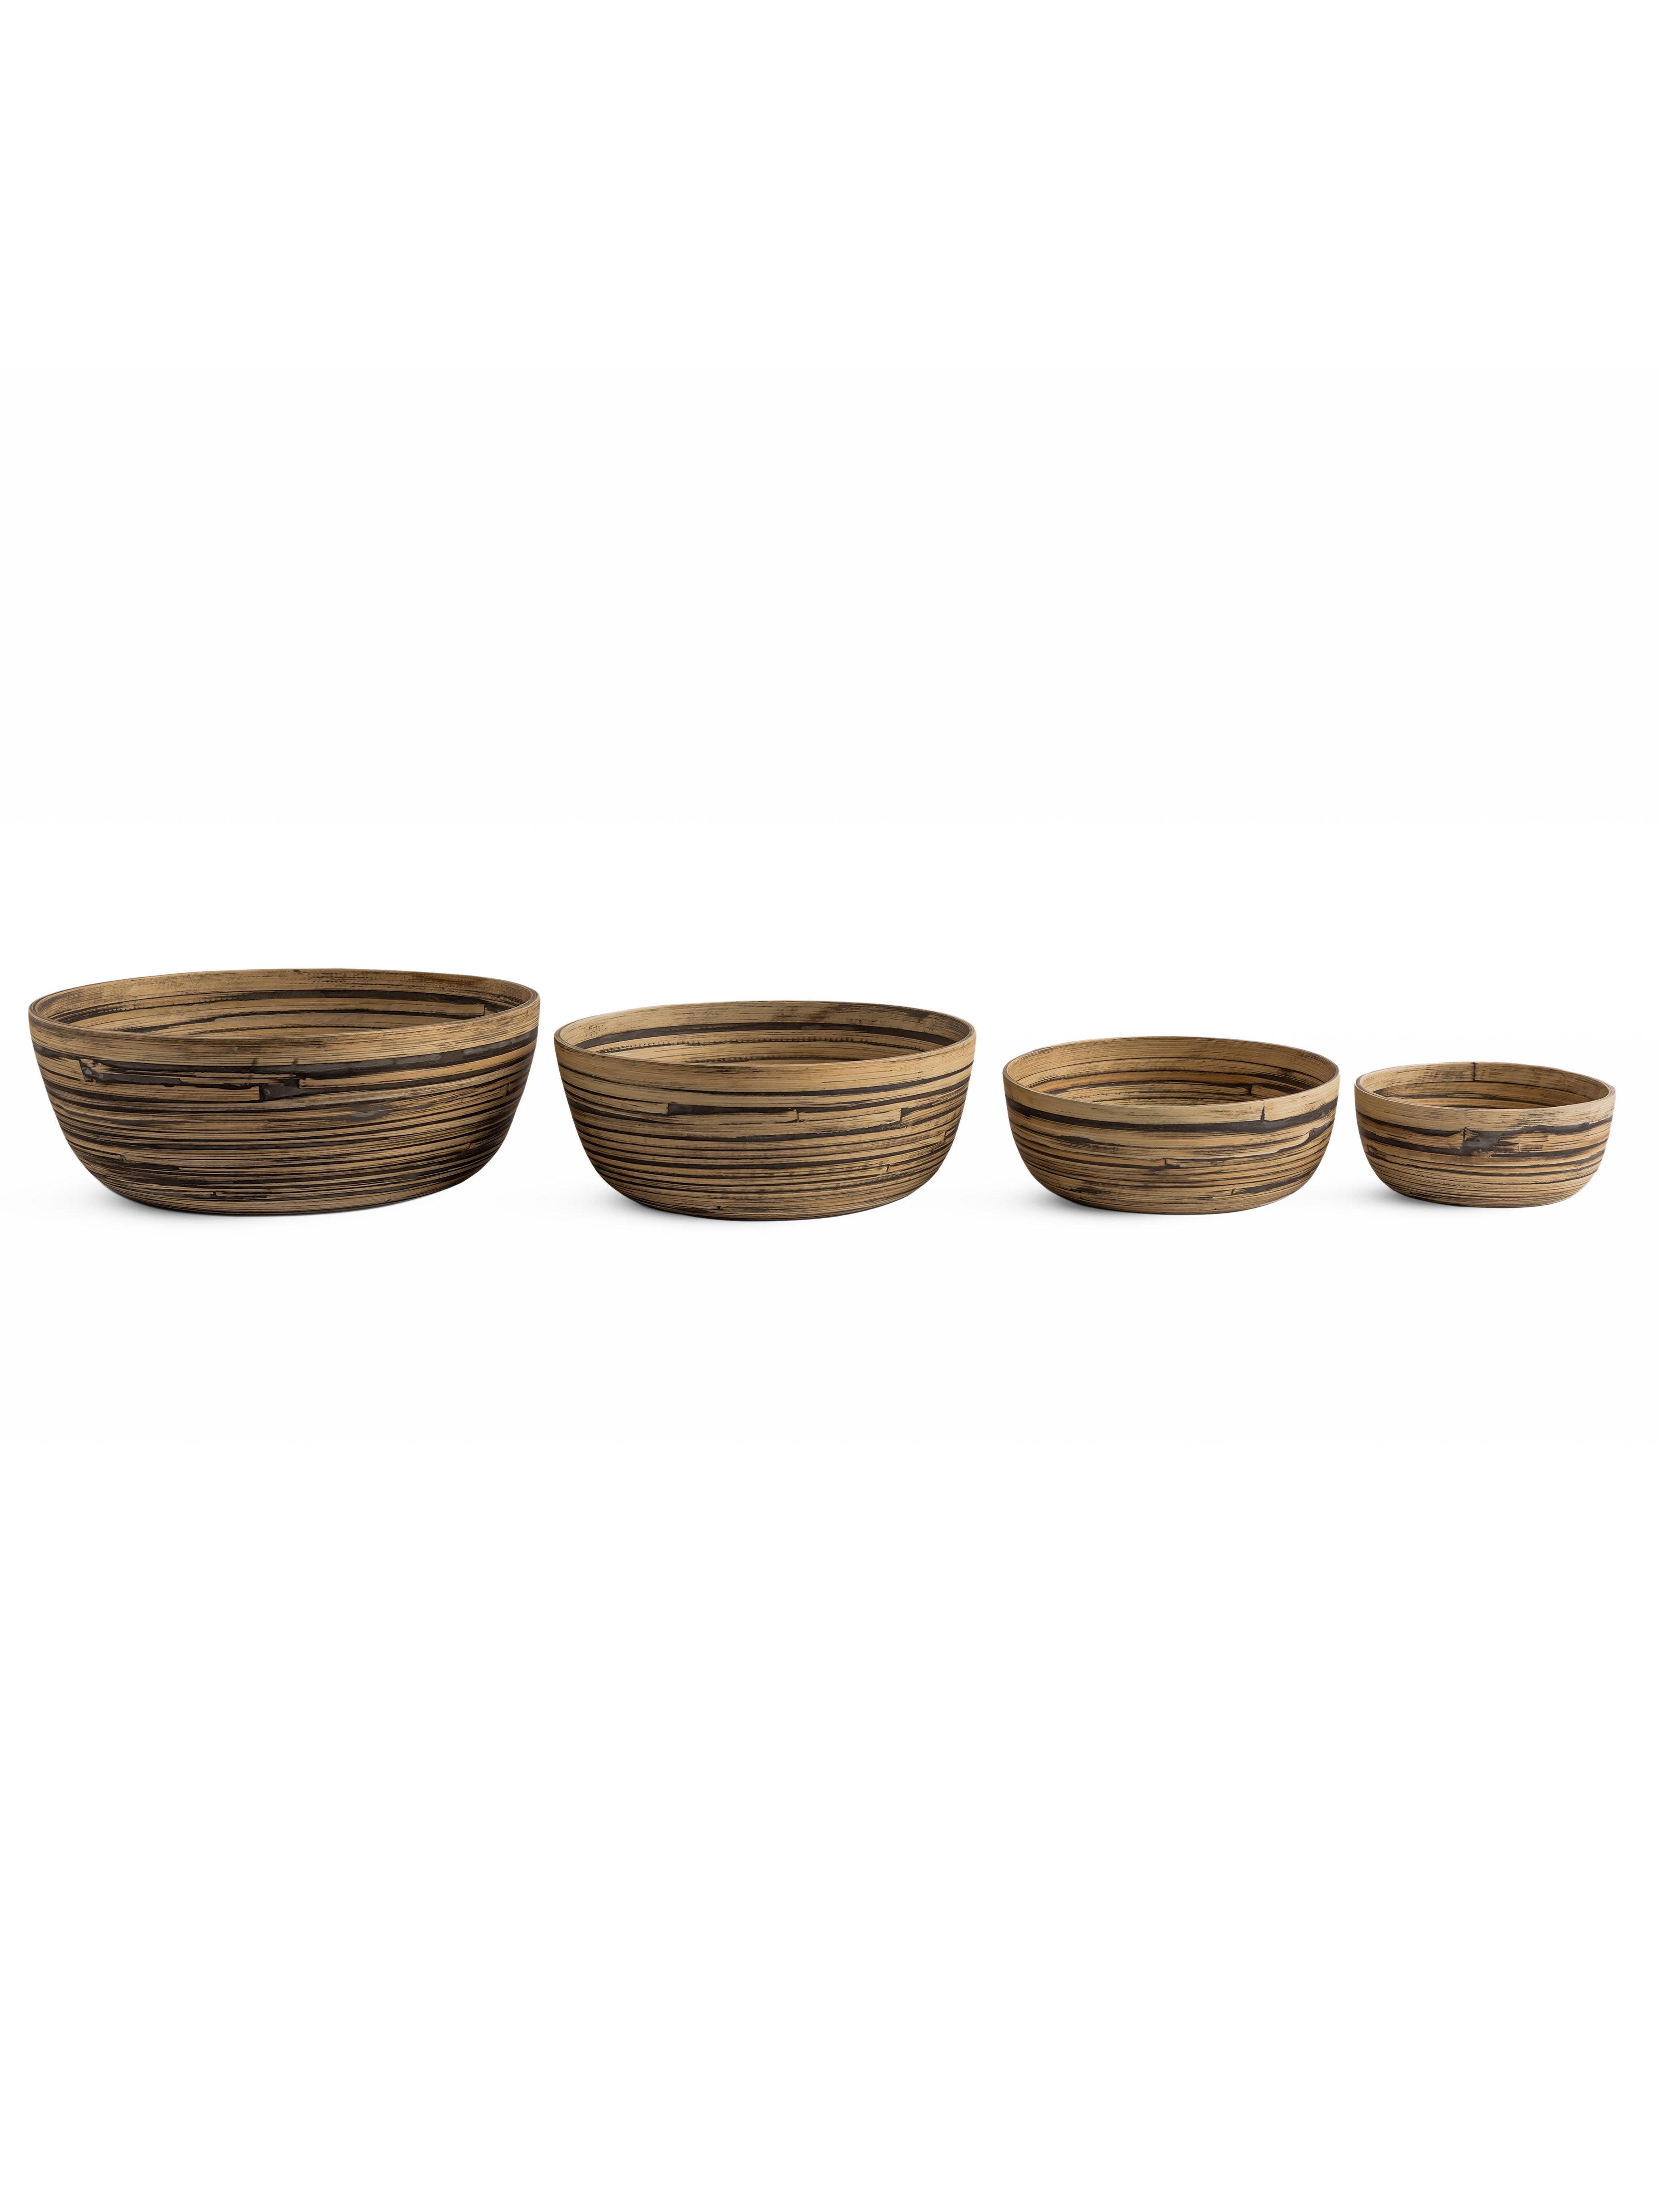 Vinz Bowl set of 4 - Living Shapes